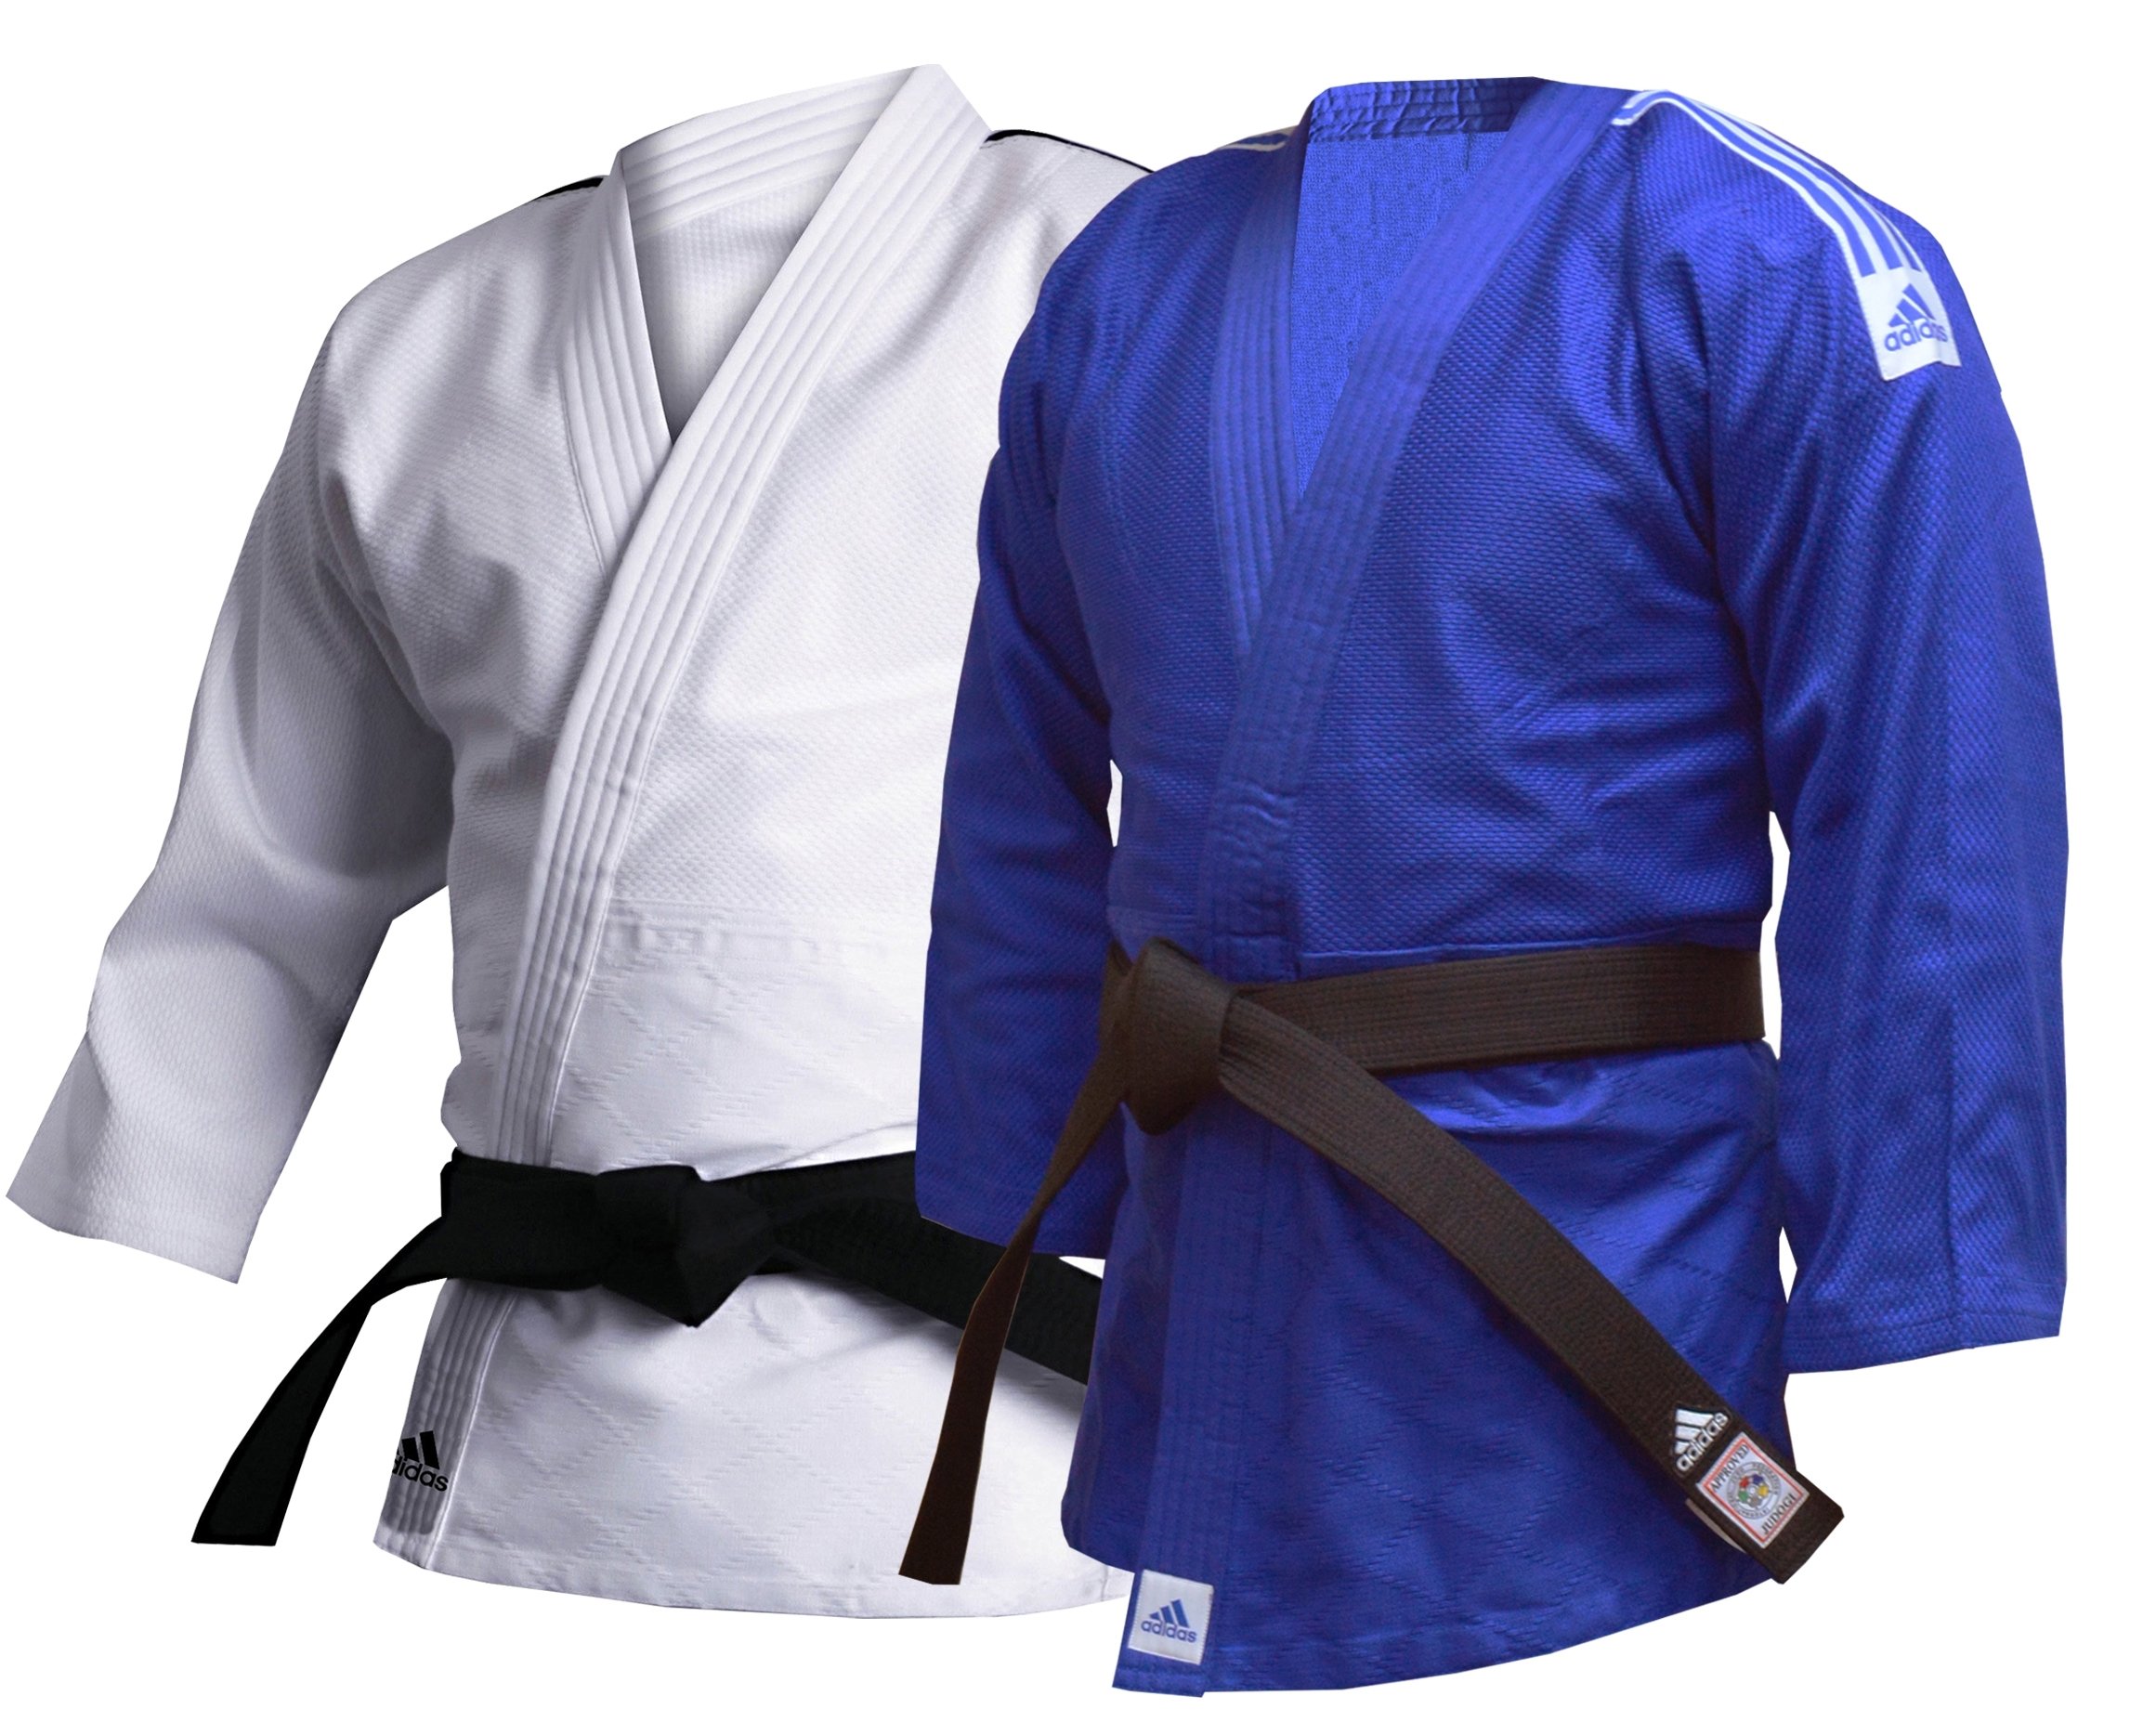 adidas judo suit